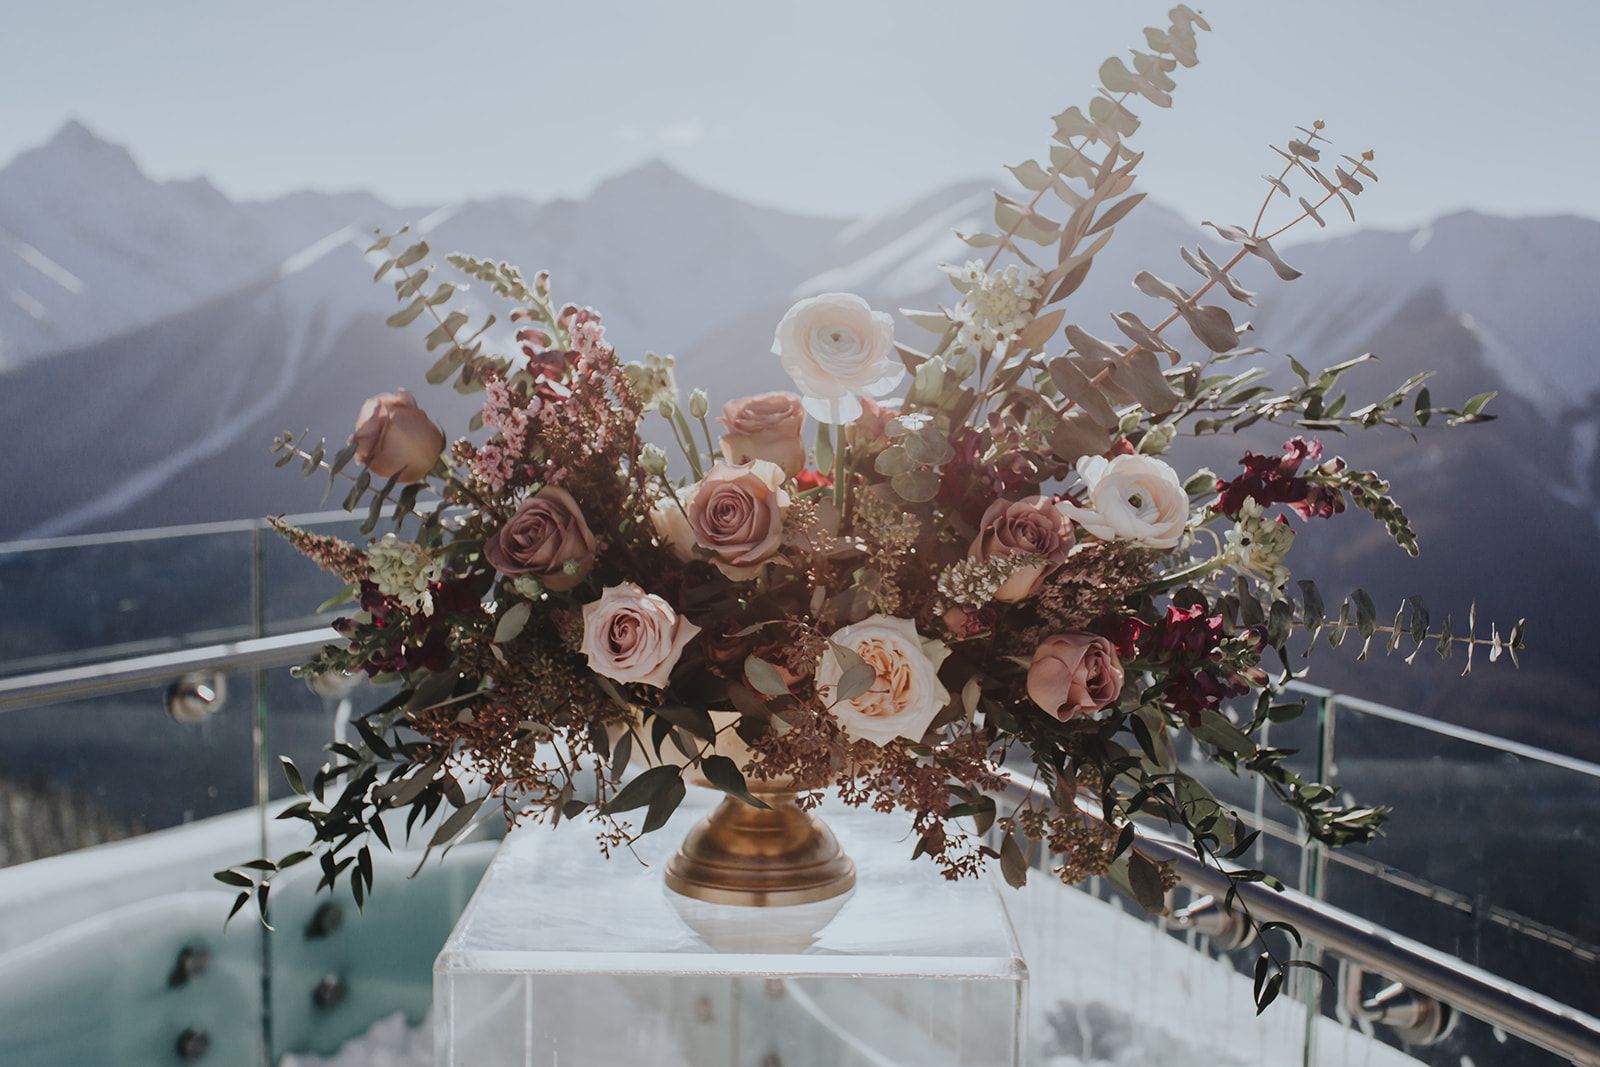 Sky Bistro Banff Wedding - Featured on Bronte Bride, wedding florals, flowers by janie